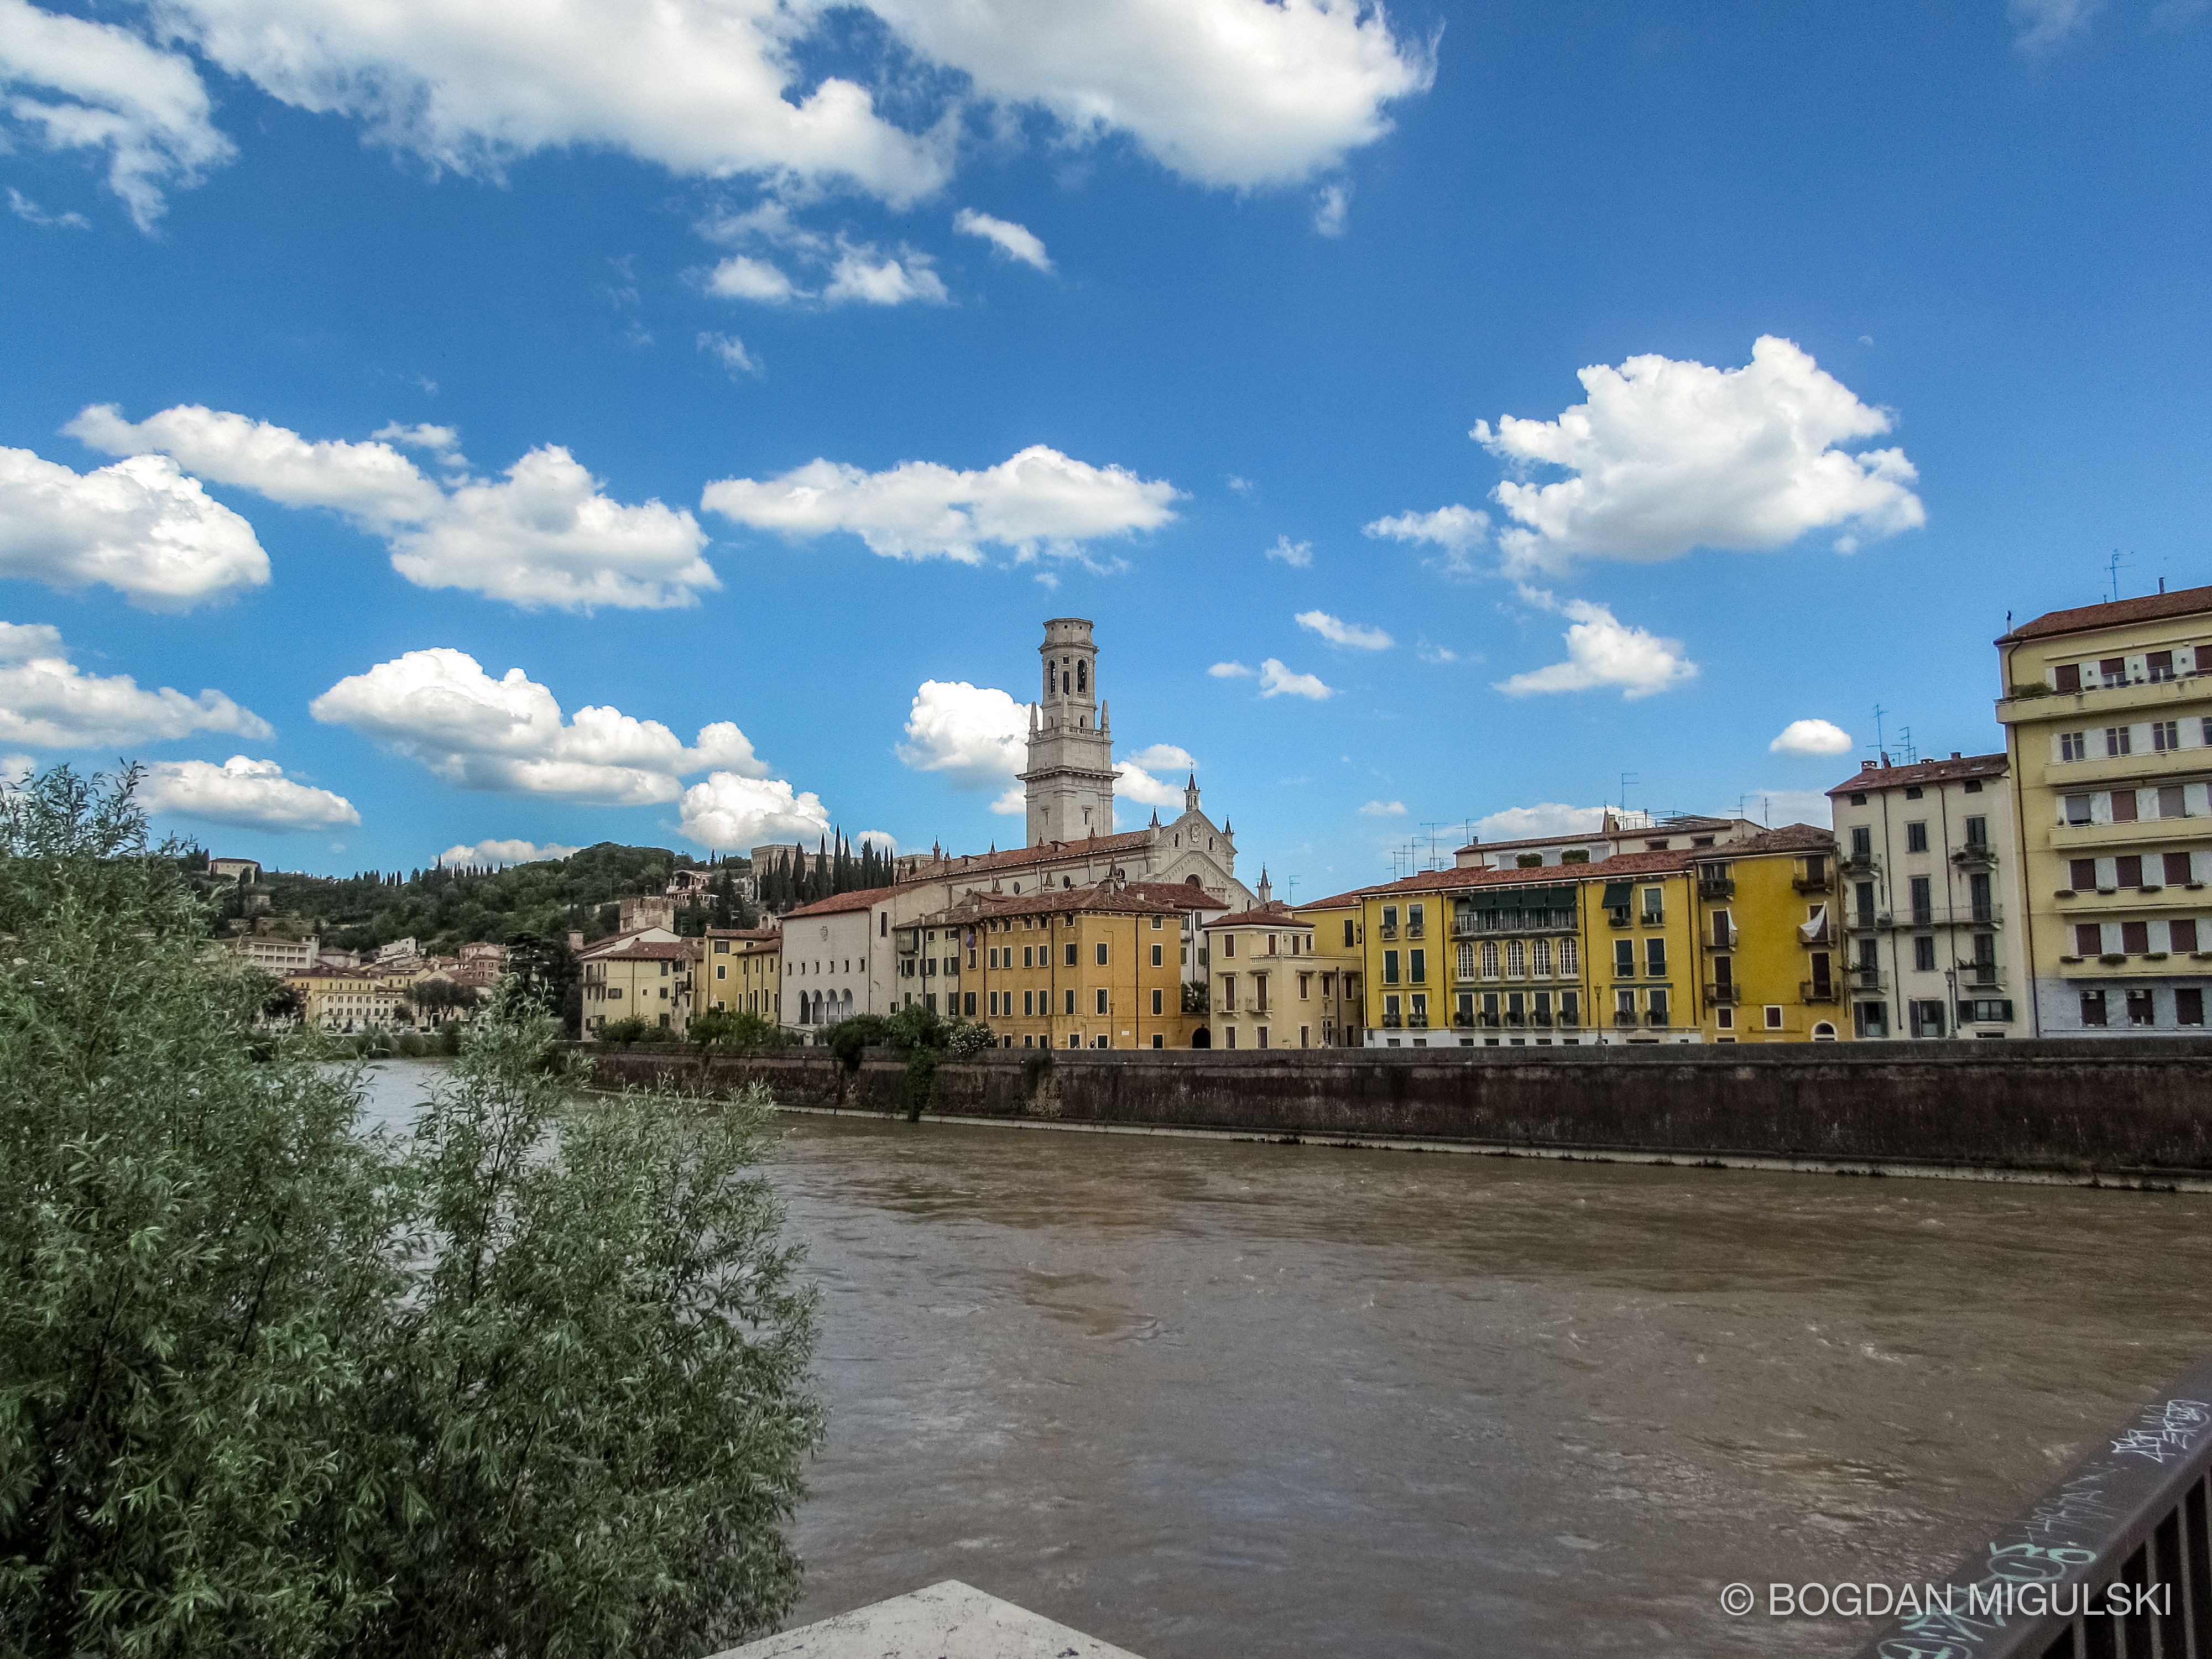 Adige River in Verona, Italy